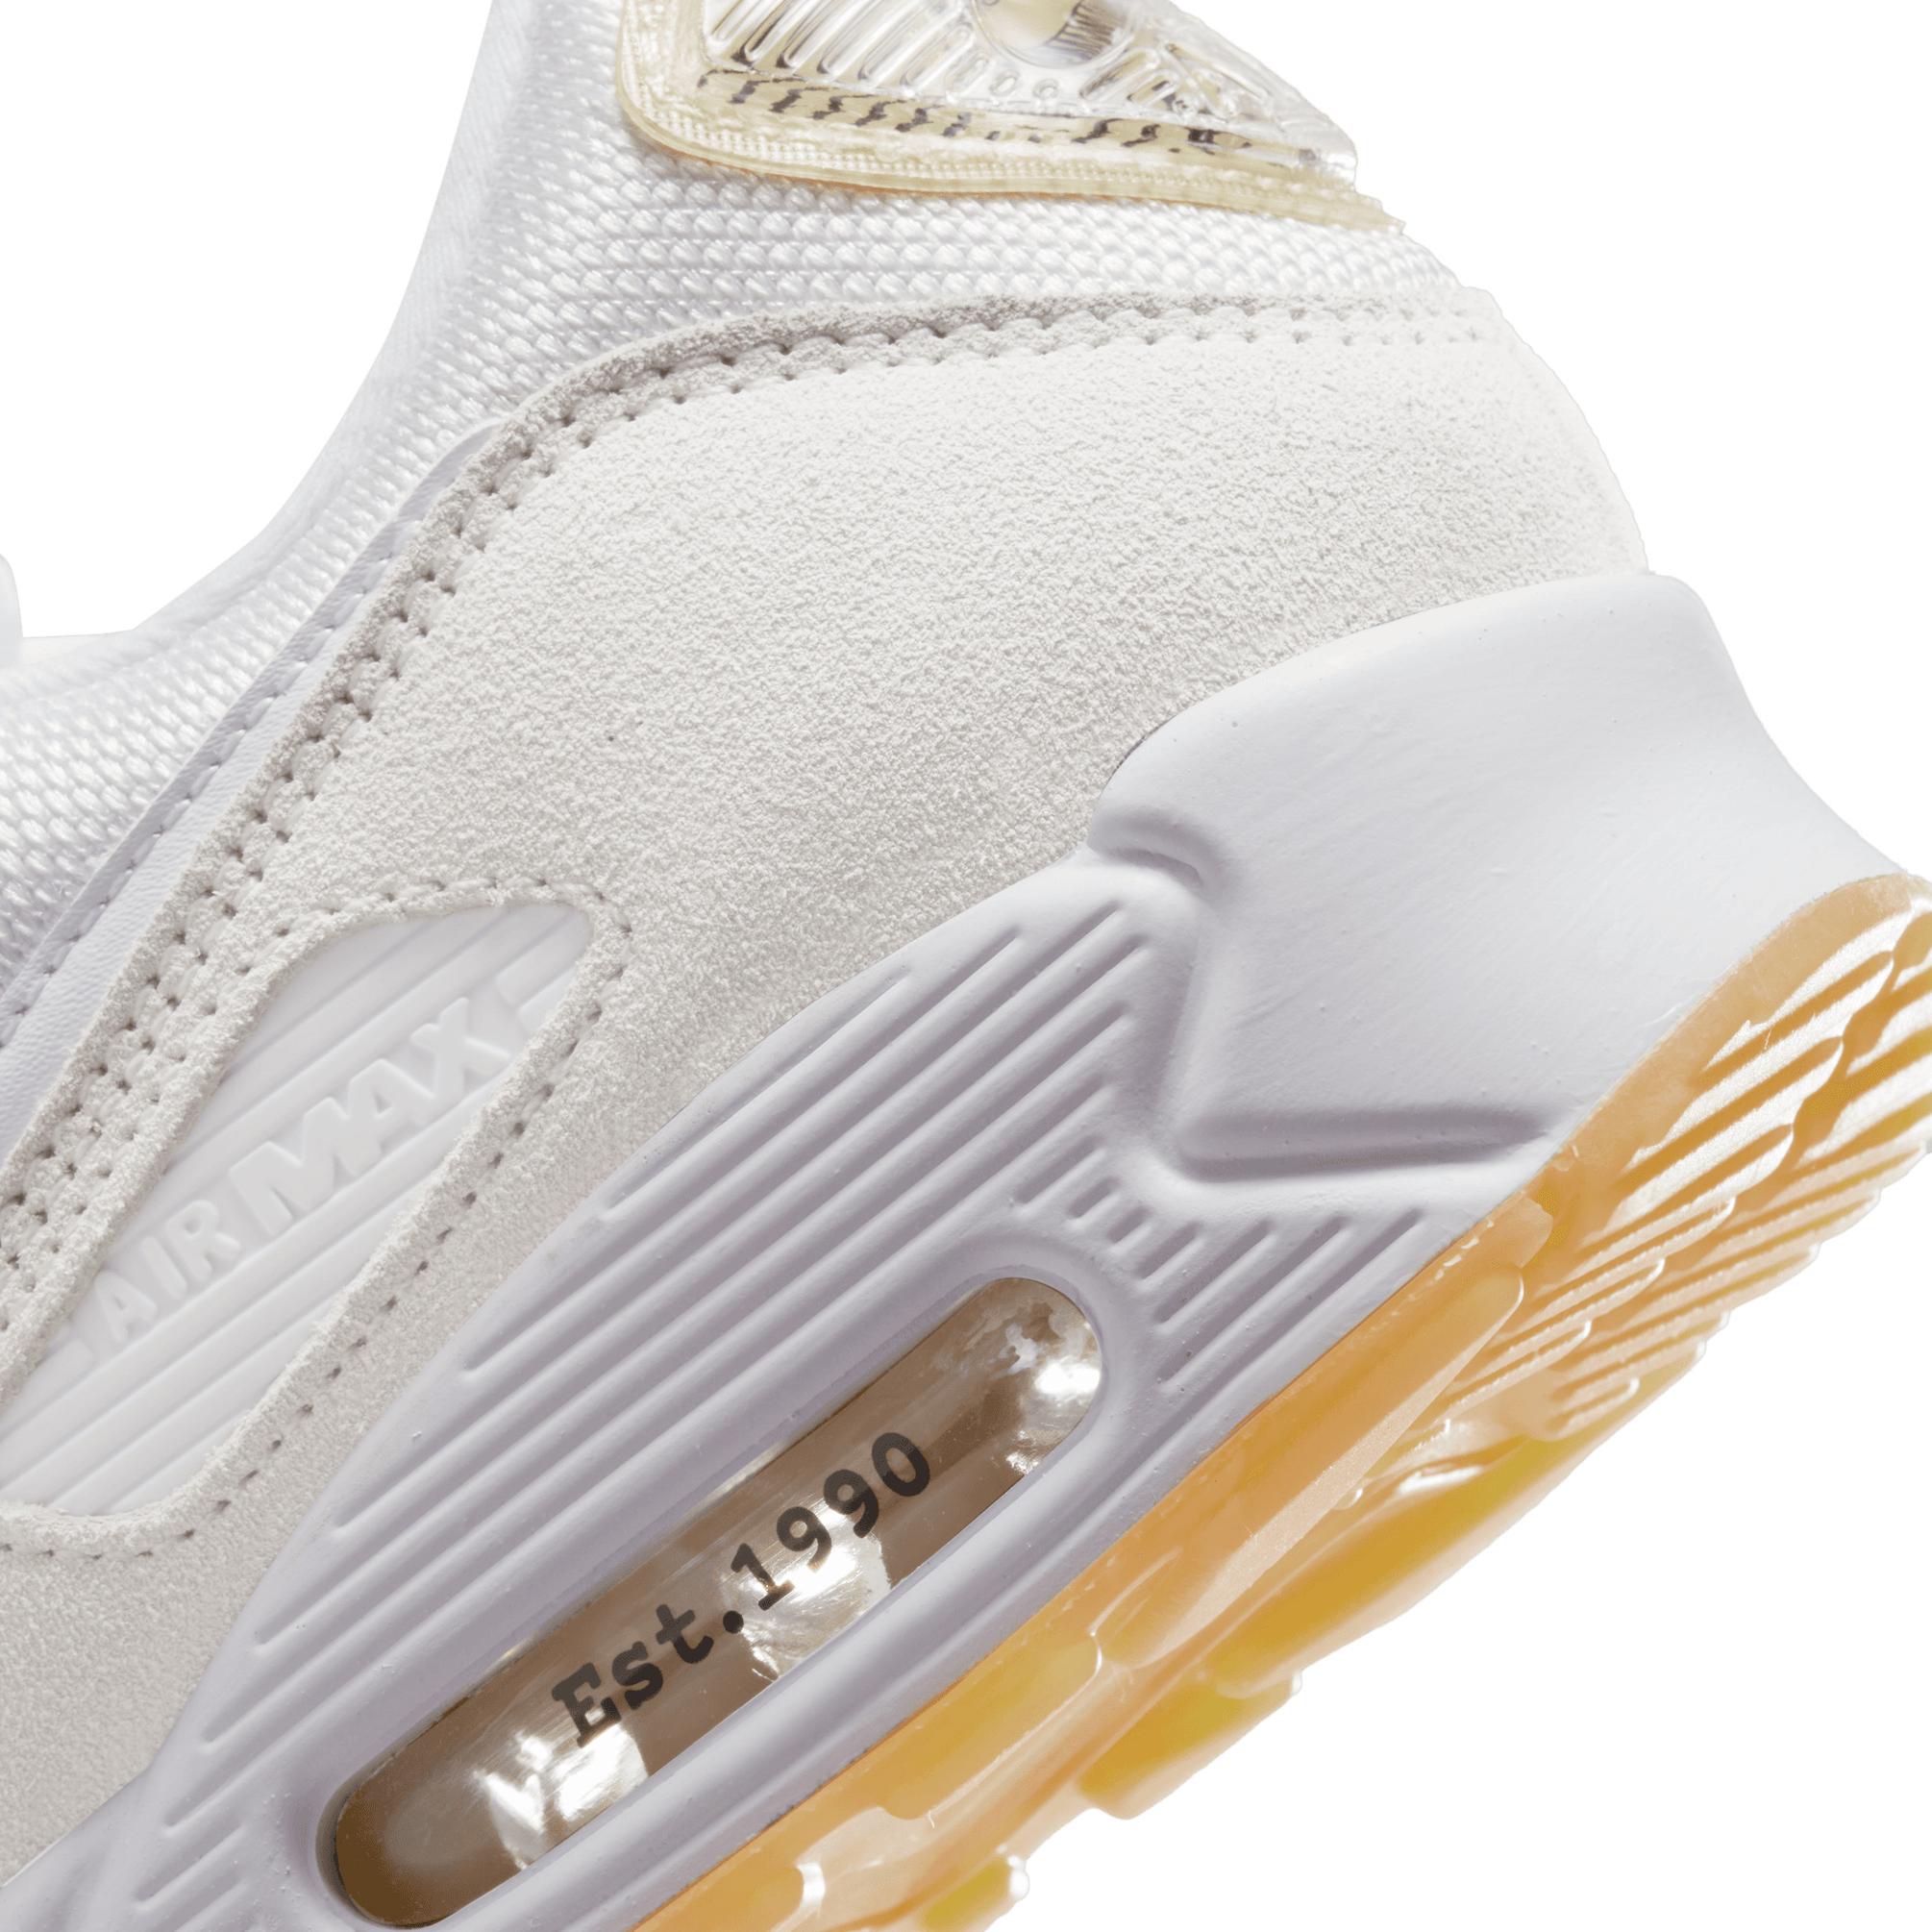  Nike Air Max 90 SE Erkek Beyaz Spor Ayakkabı